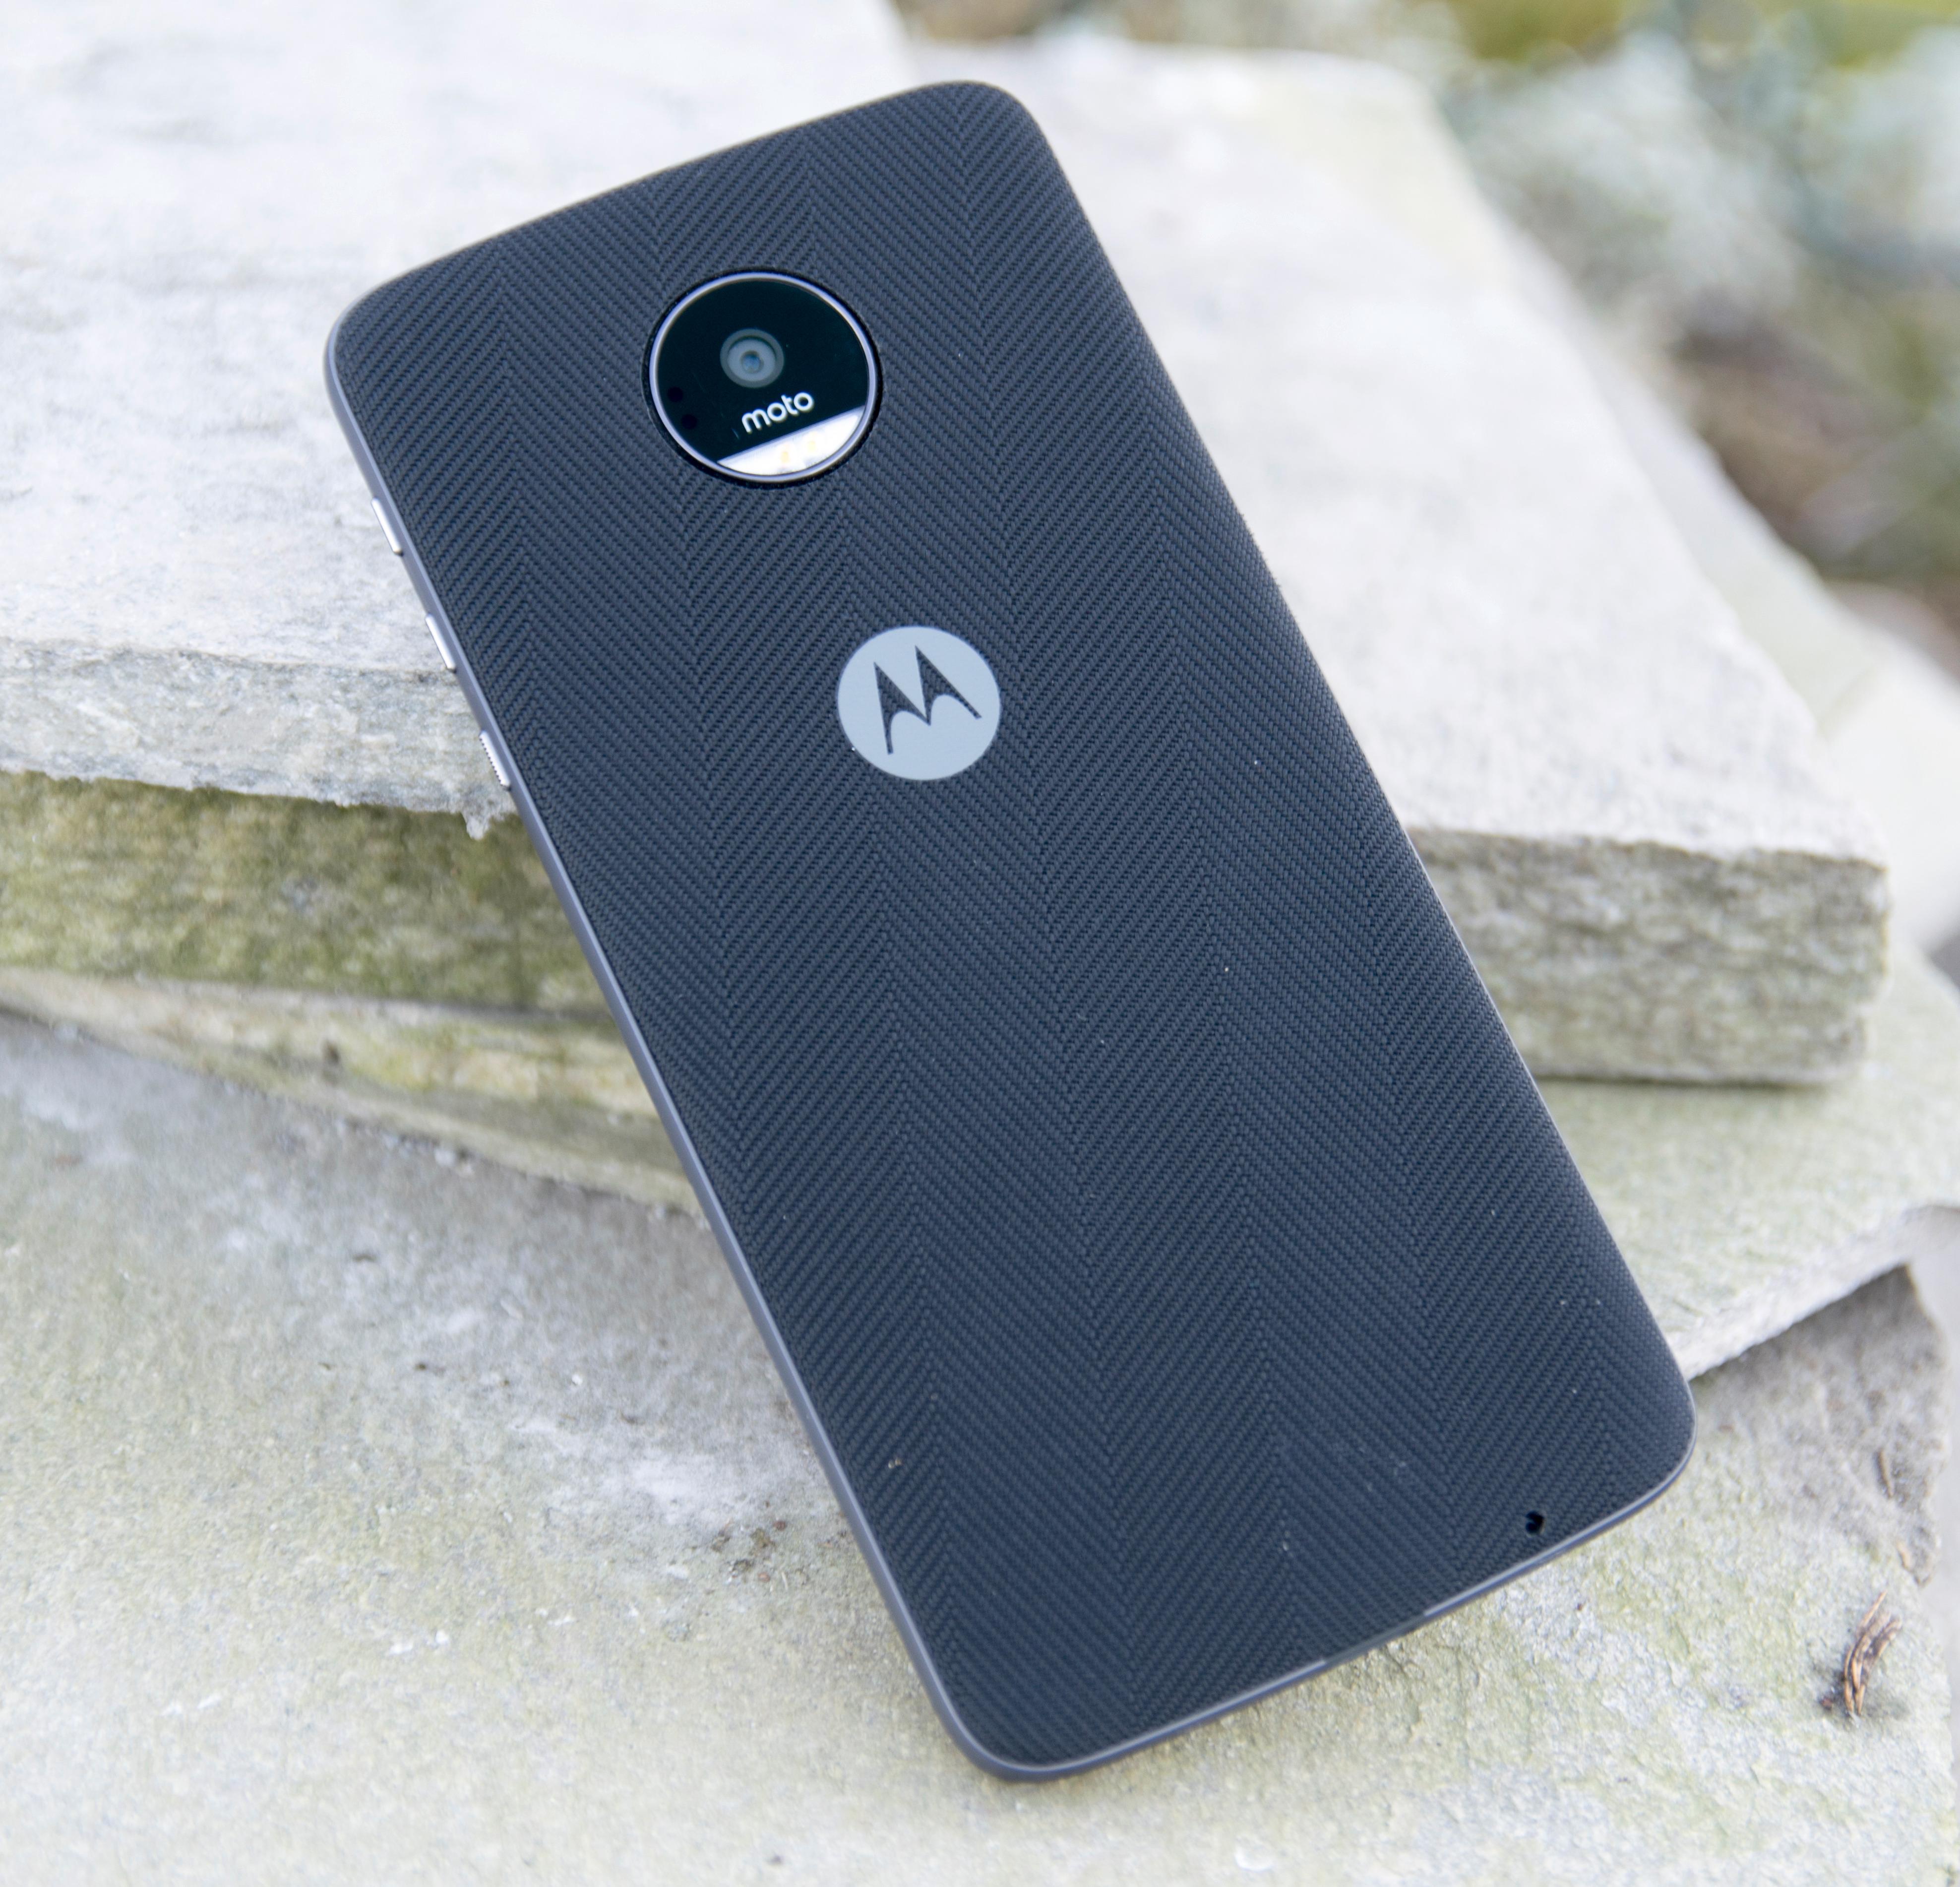 Motorola lager kledelige bakdeksler til å sette på Moto Z, men da øker også tykkelsen. Skal du likevel ha deksel på telefonen, kunne plassen like gjerne vært brukt på større batteri.